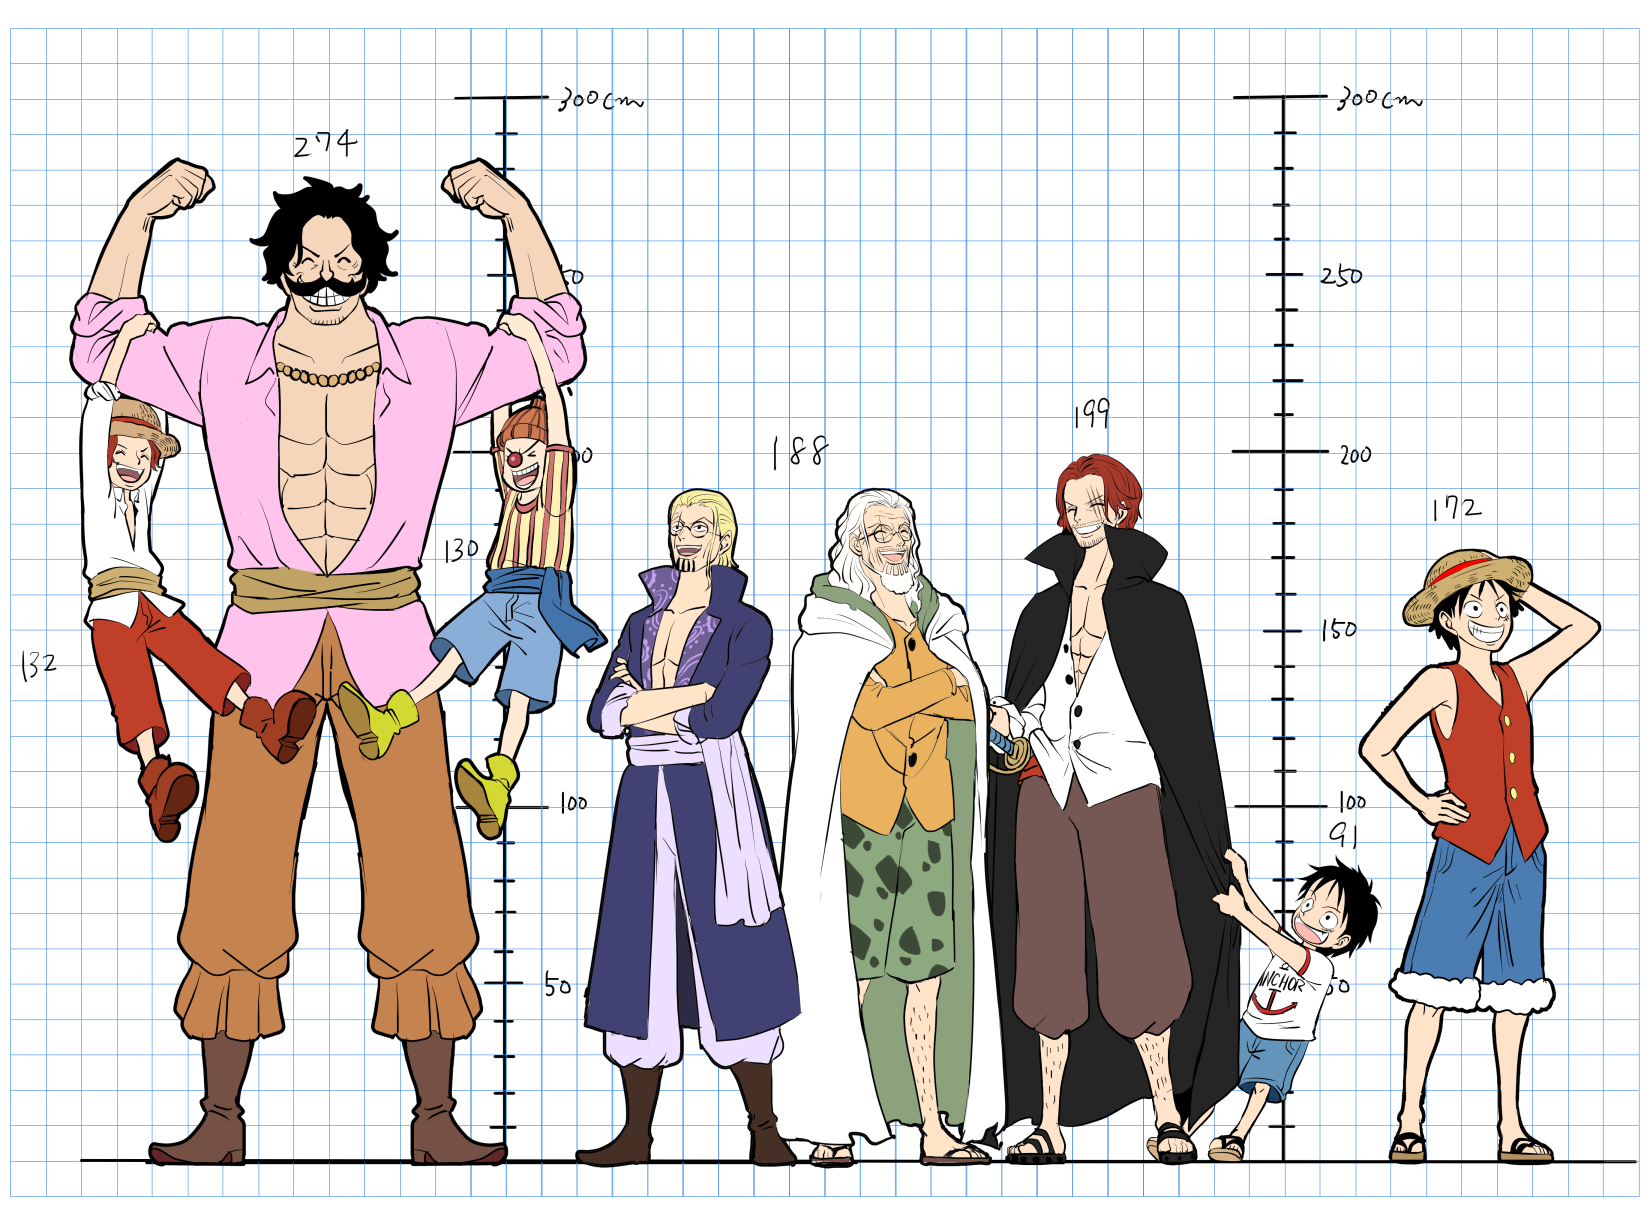 むささび 複数人描く時の参考に身長対比作ってみたけど 思ってたよりロジャーとレイリーの差大きい T Co Xeqdi578jx Twitter